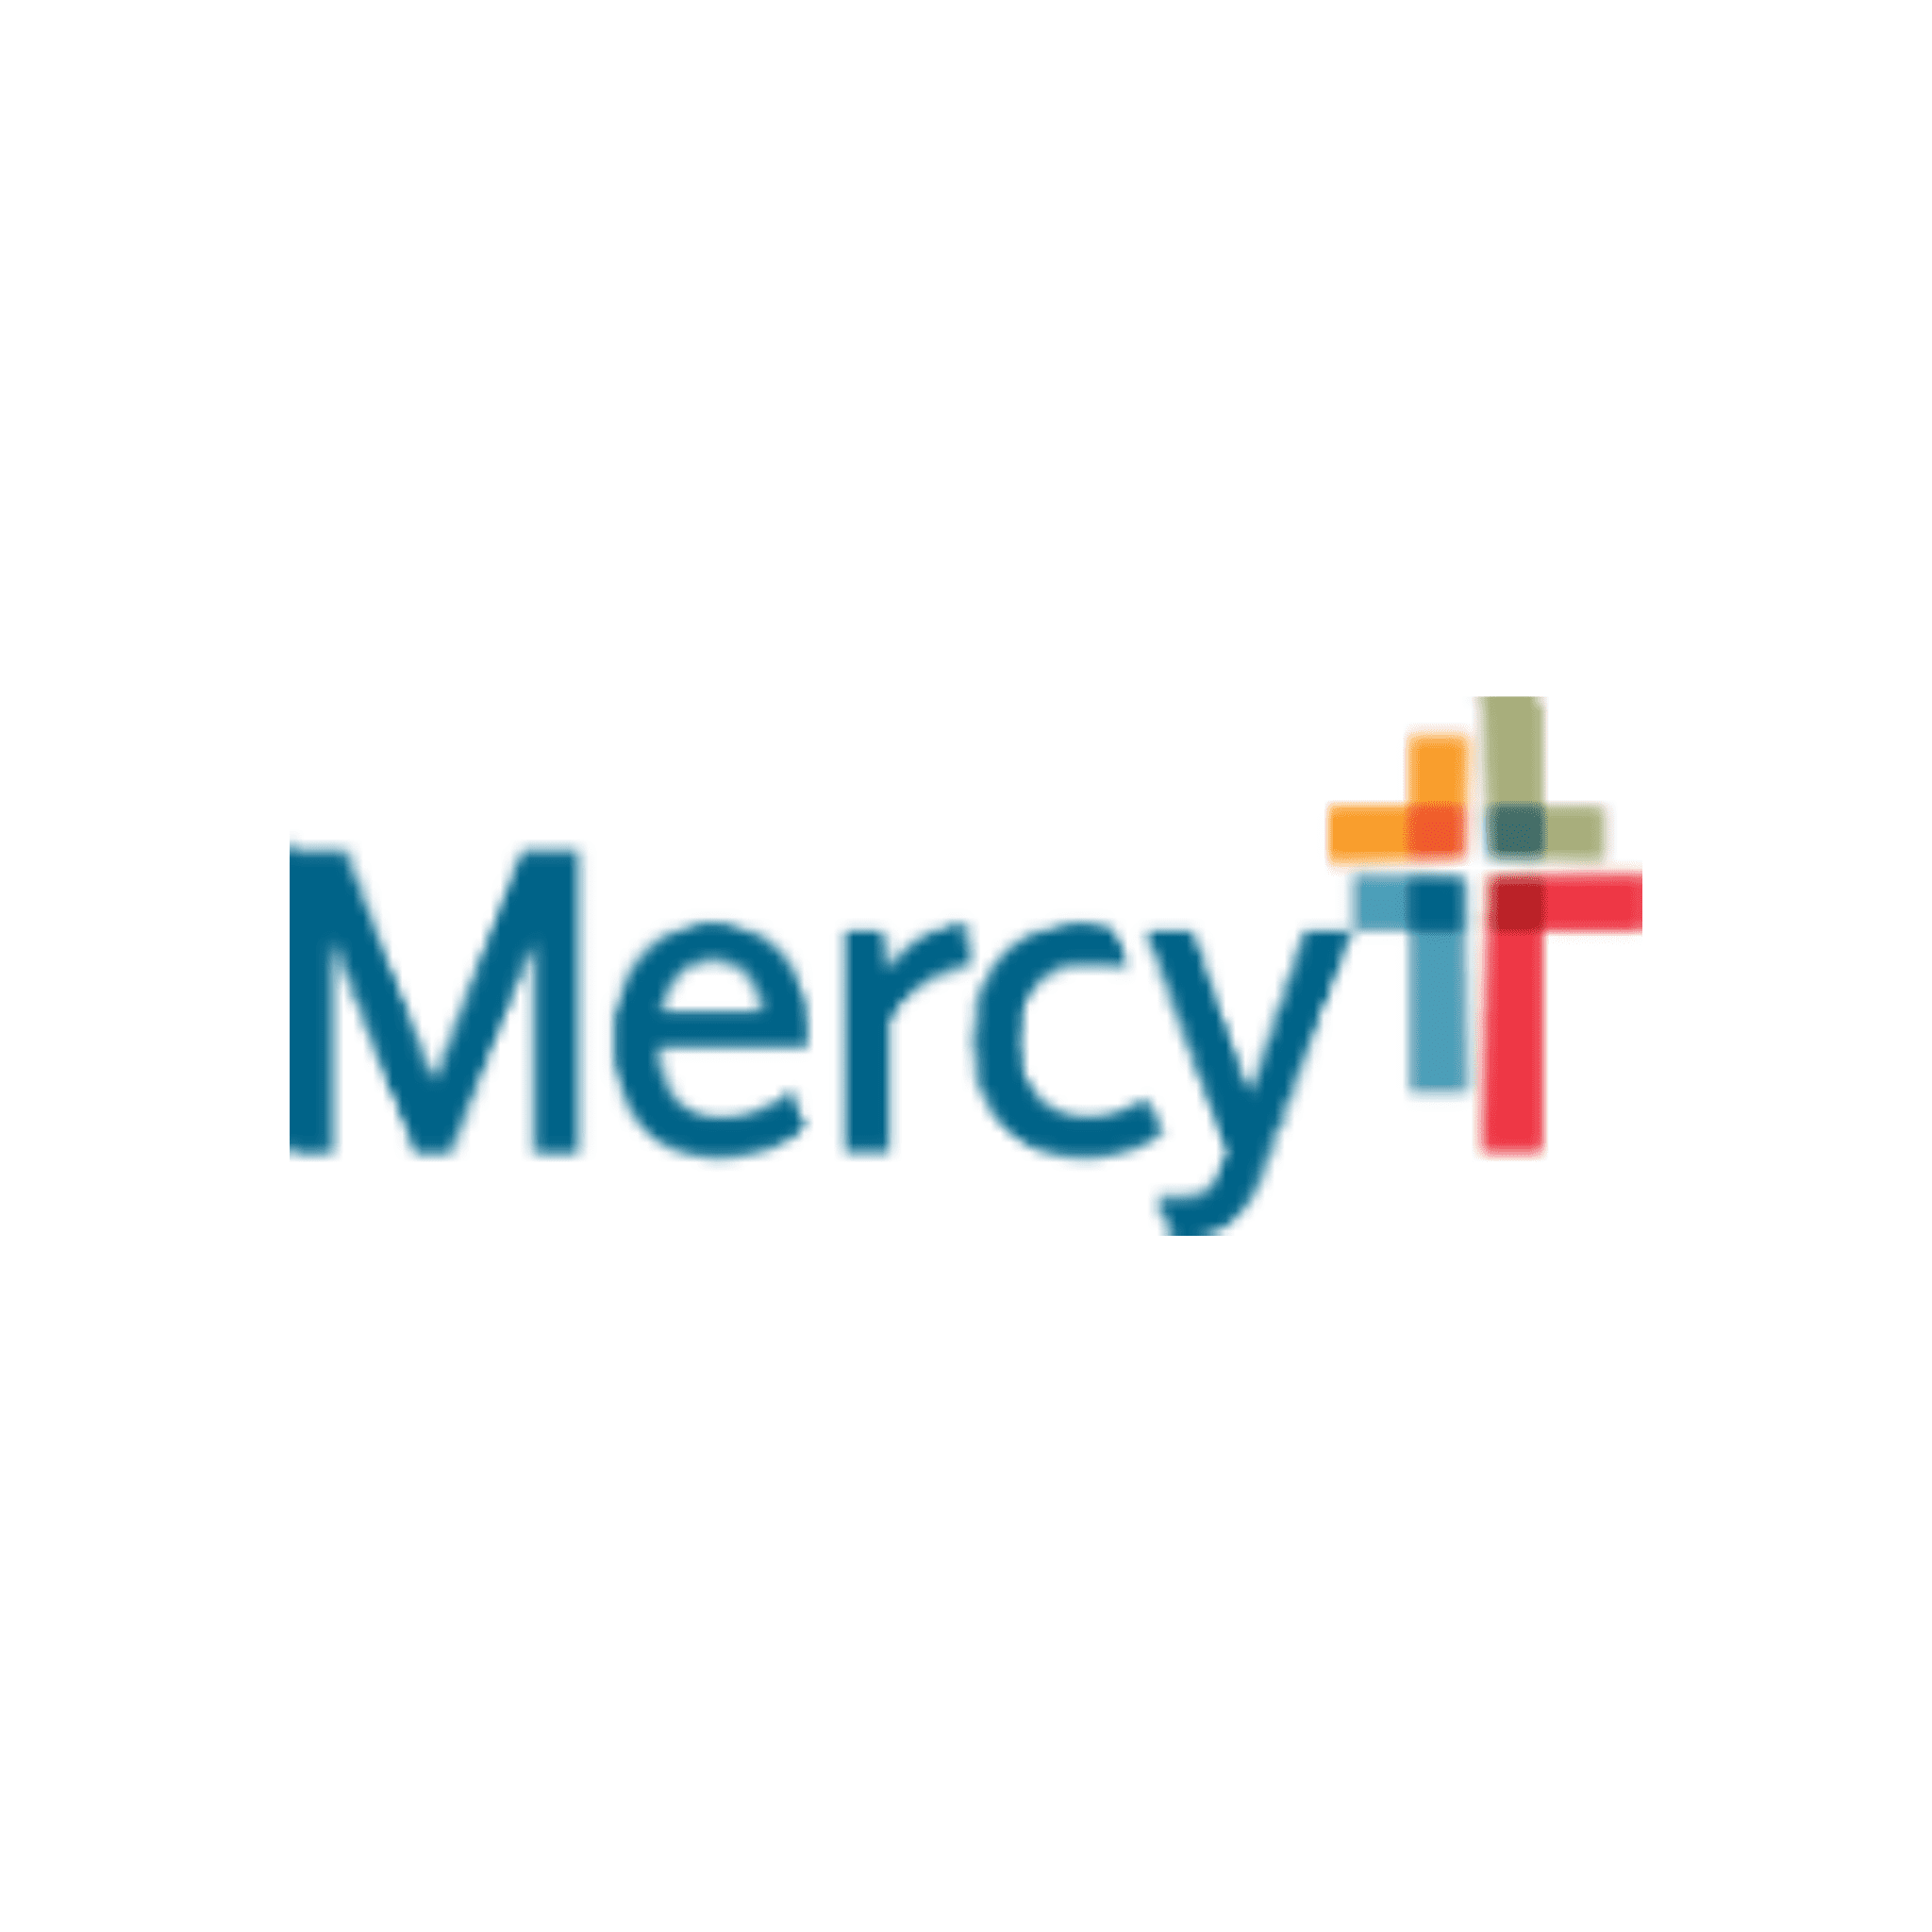 Mercy logo